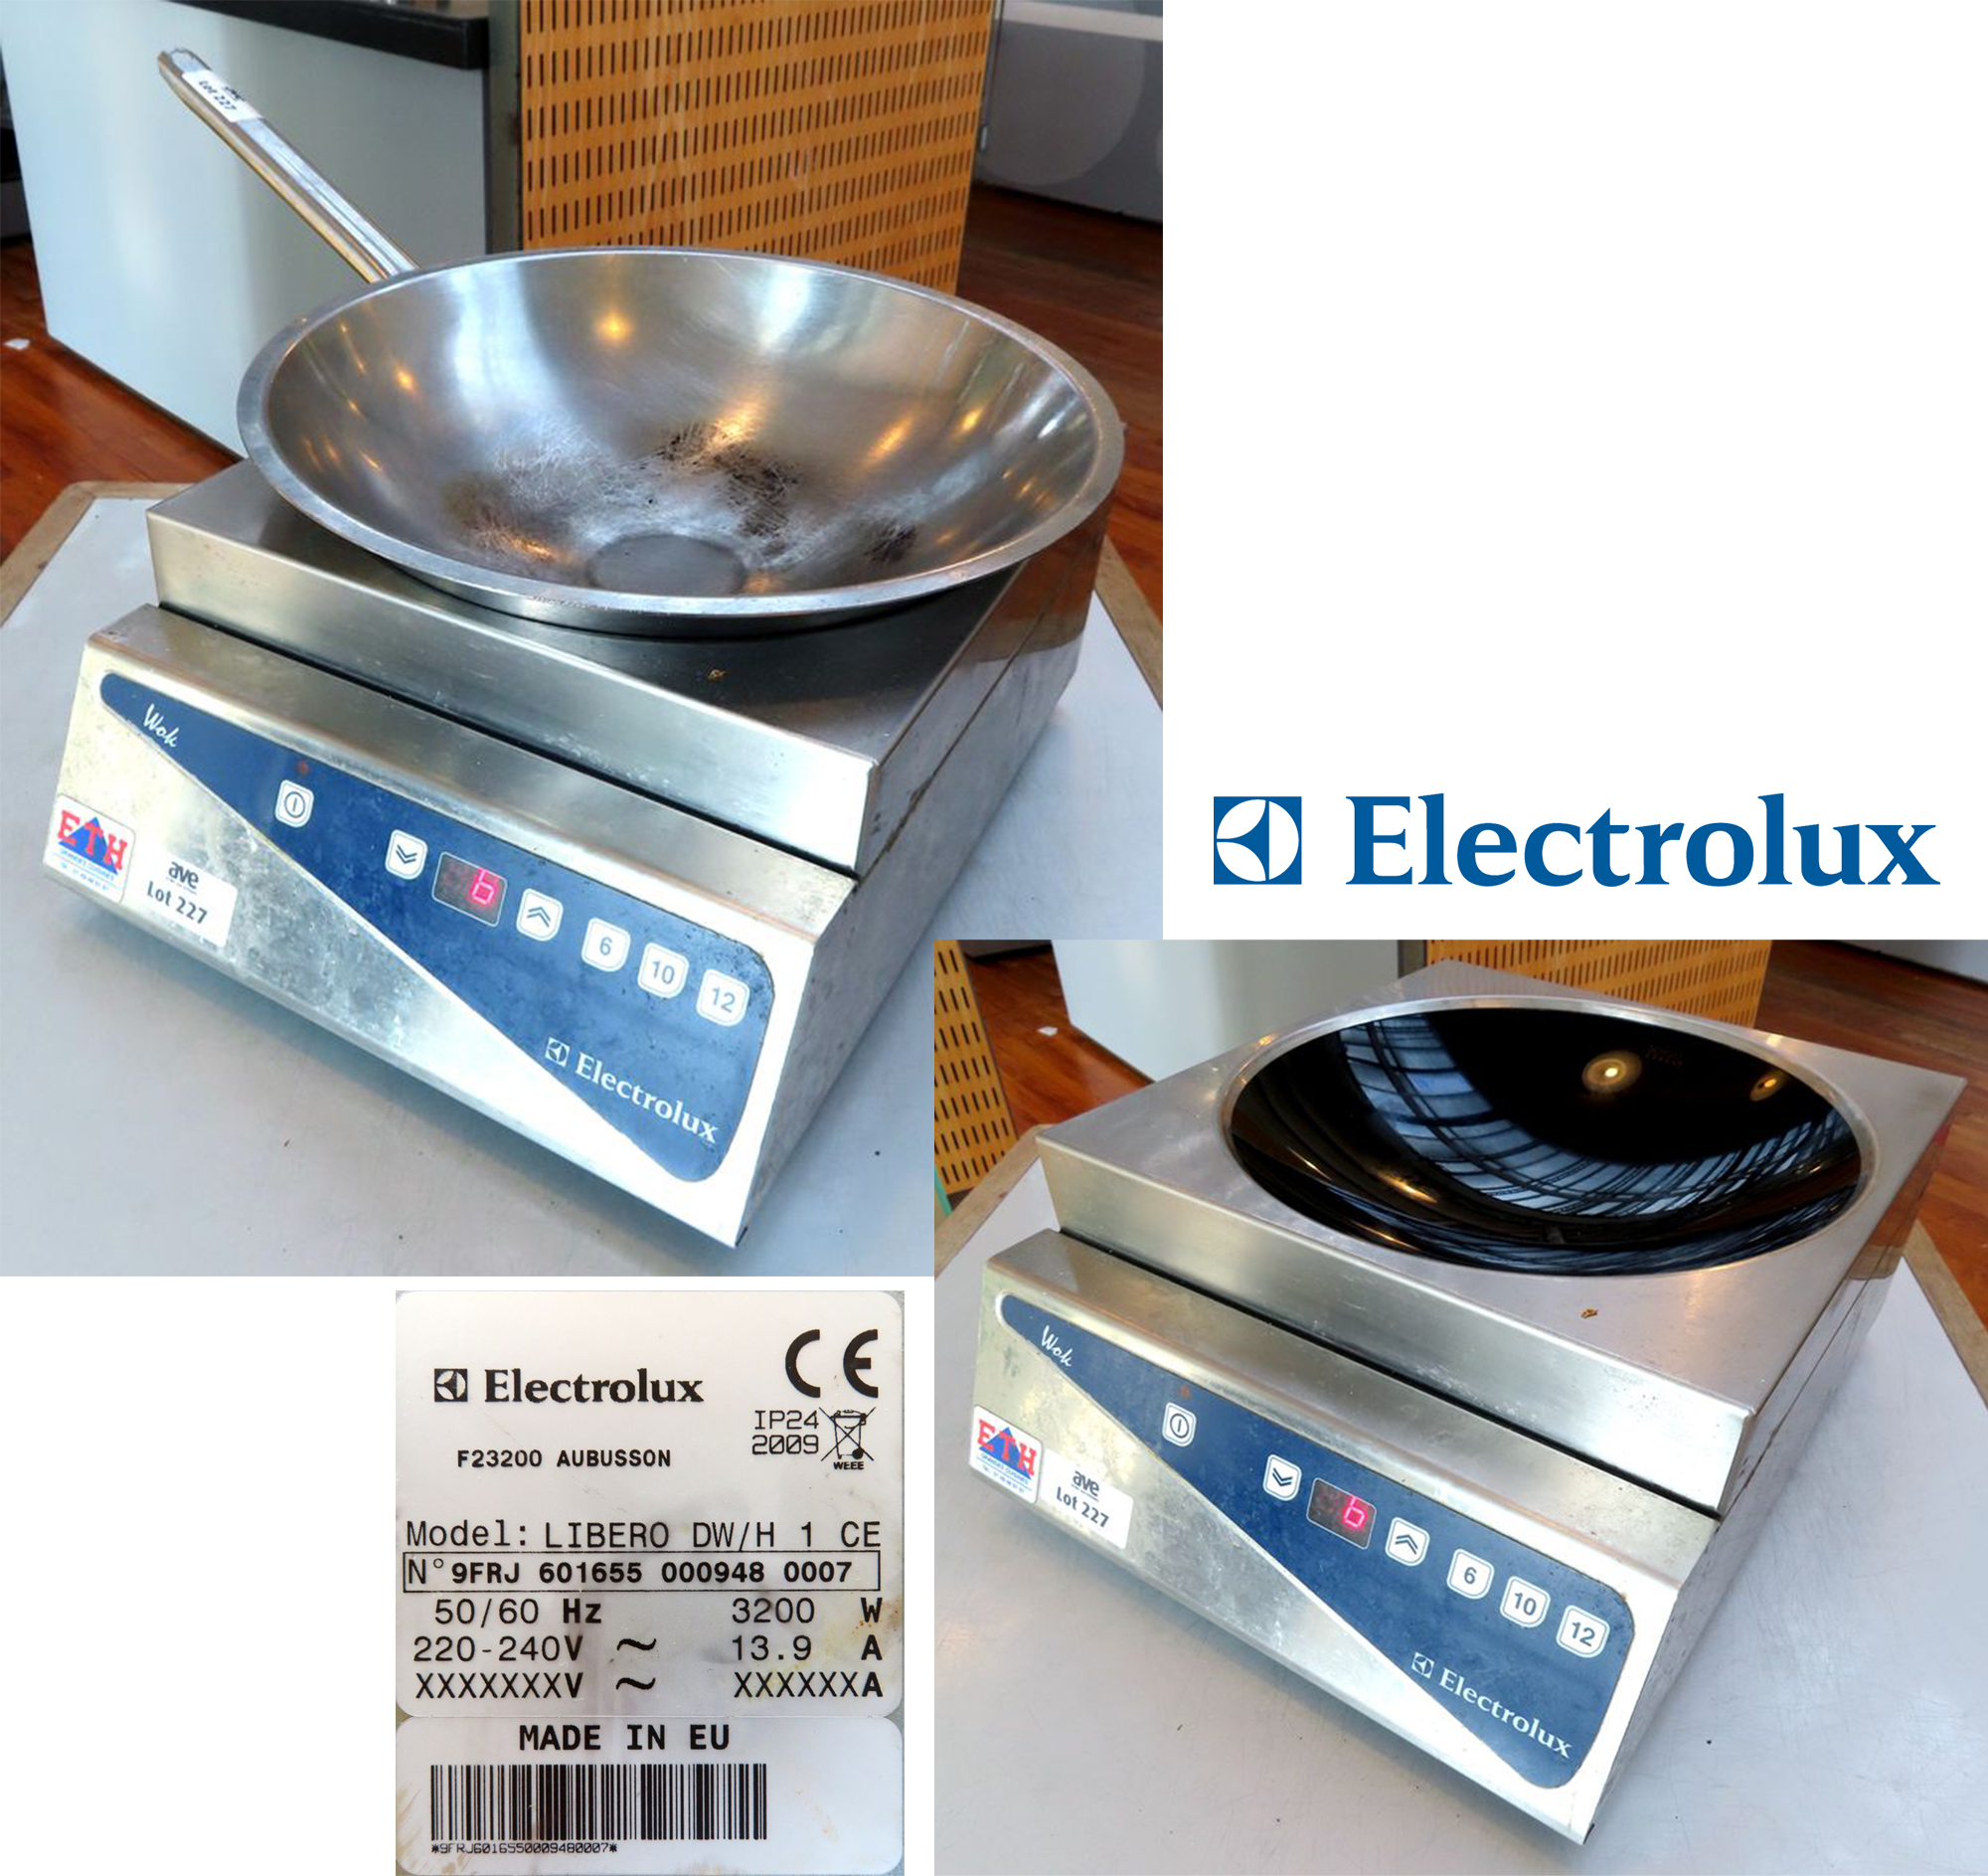 WOK ELECTRIQUE A INDUCTION DE MARQUE ELECTROLUX MODELE LIBERO DW/H 1 CE.